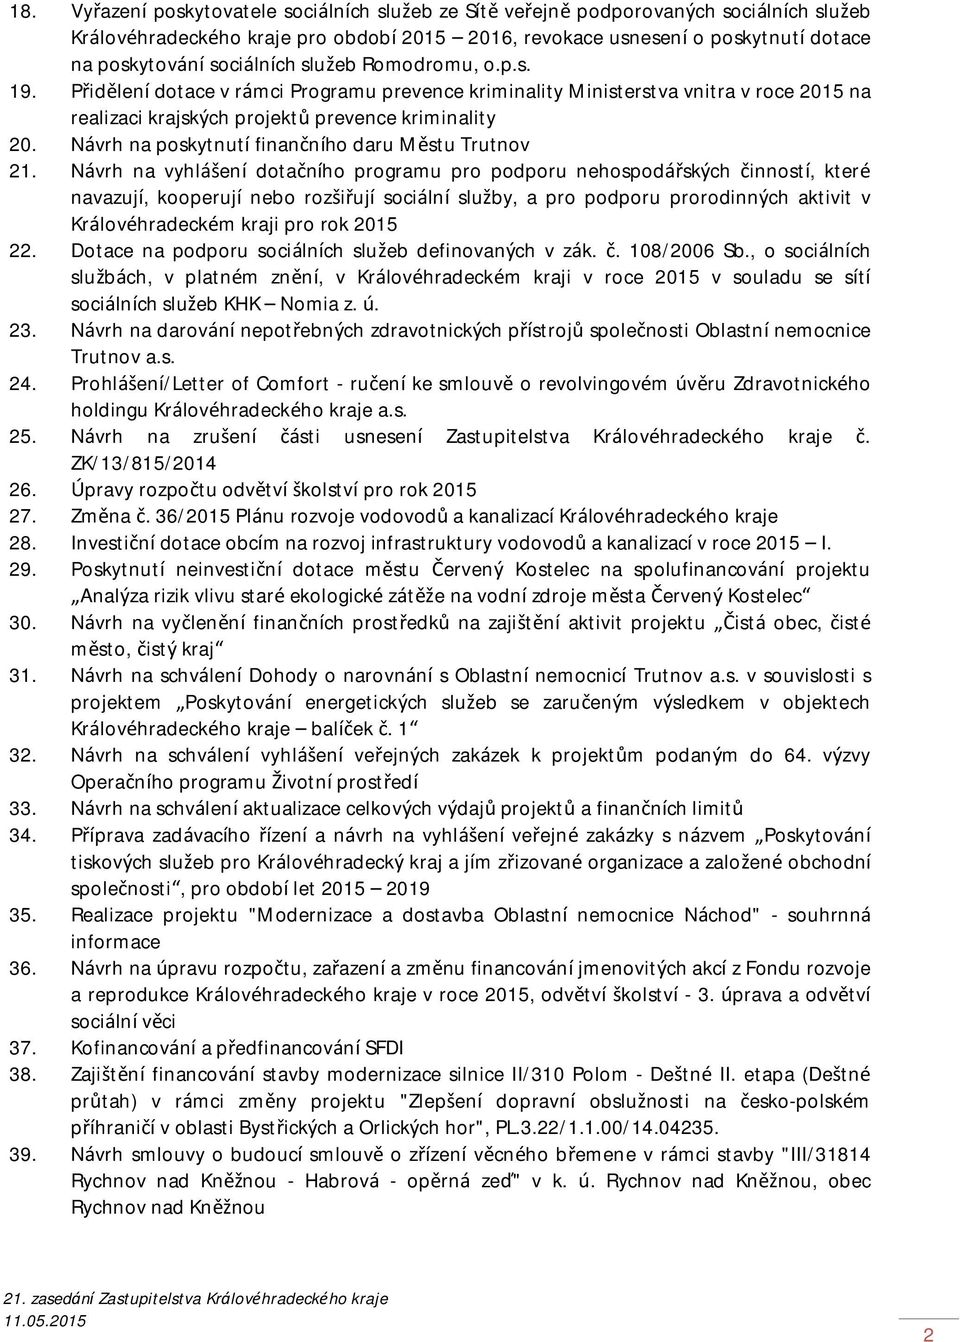 Návrh na poskytnutí finančního daru Městu Trutnov 21.